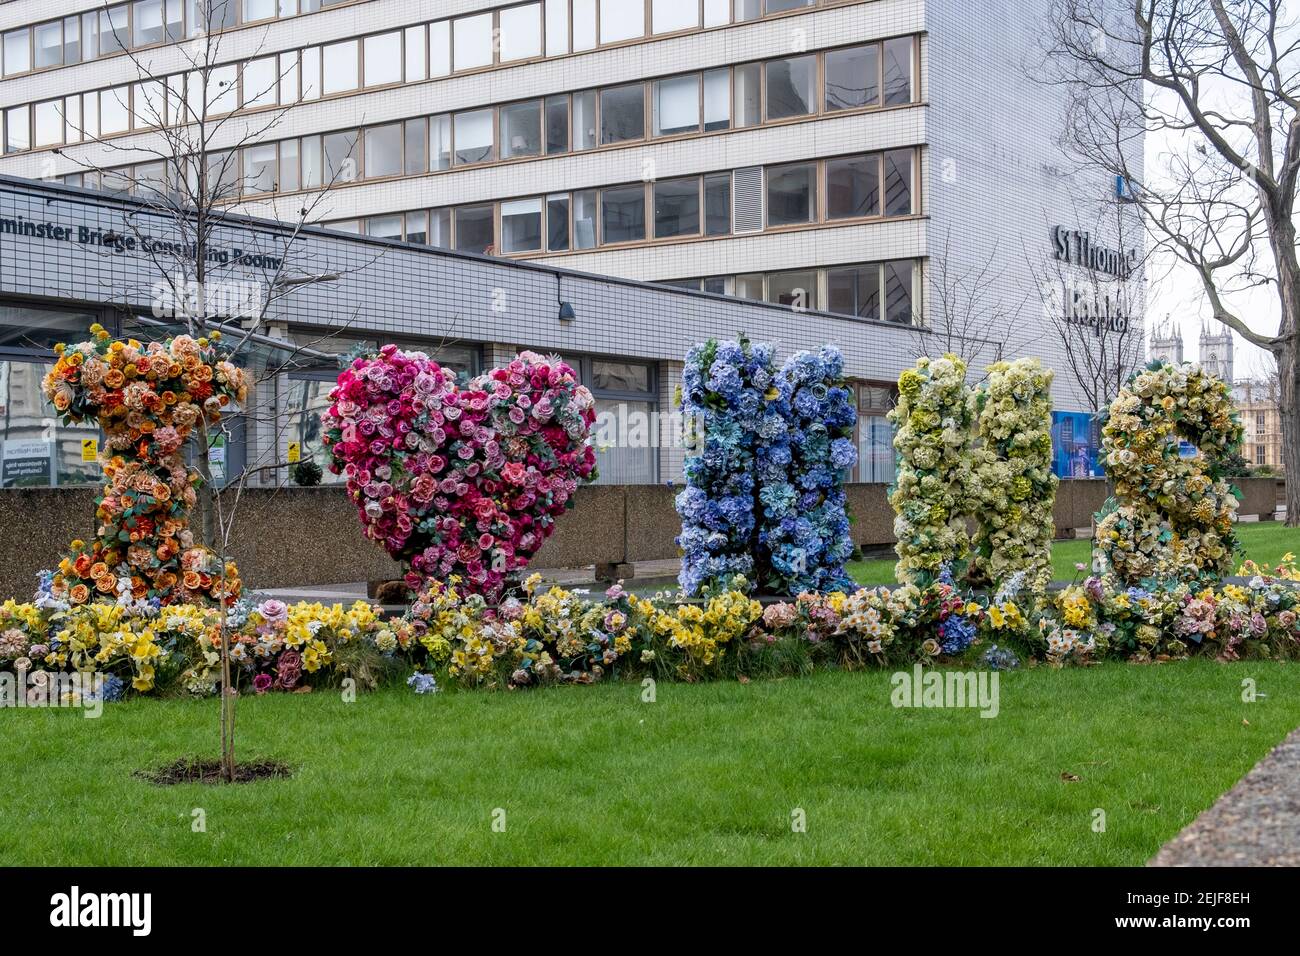 Hommage floral aux travailleurs du NHS, à l'hôpital St Thomas de Londres, au plus fort de la deuxième vague de la pandémie Covid-19 en février 2021 Banque D'Images